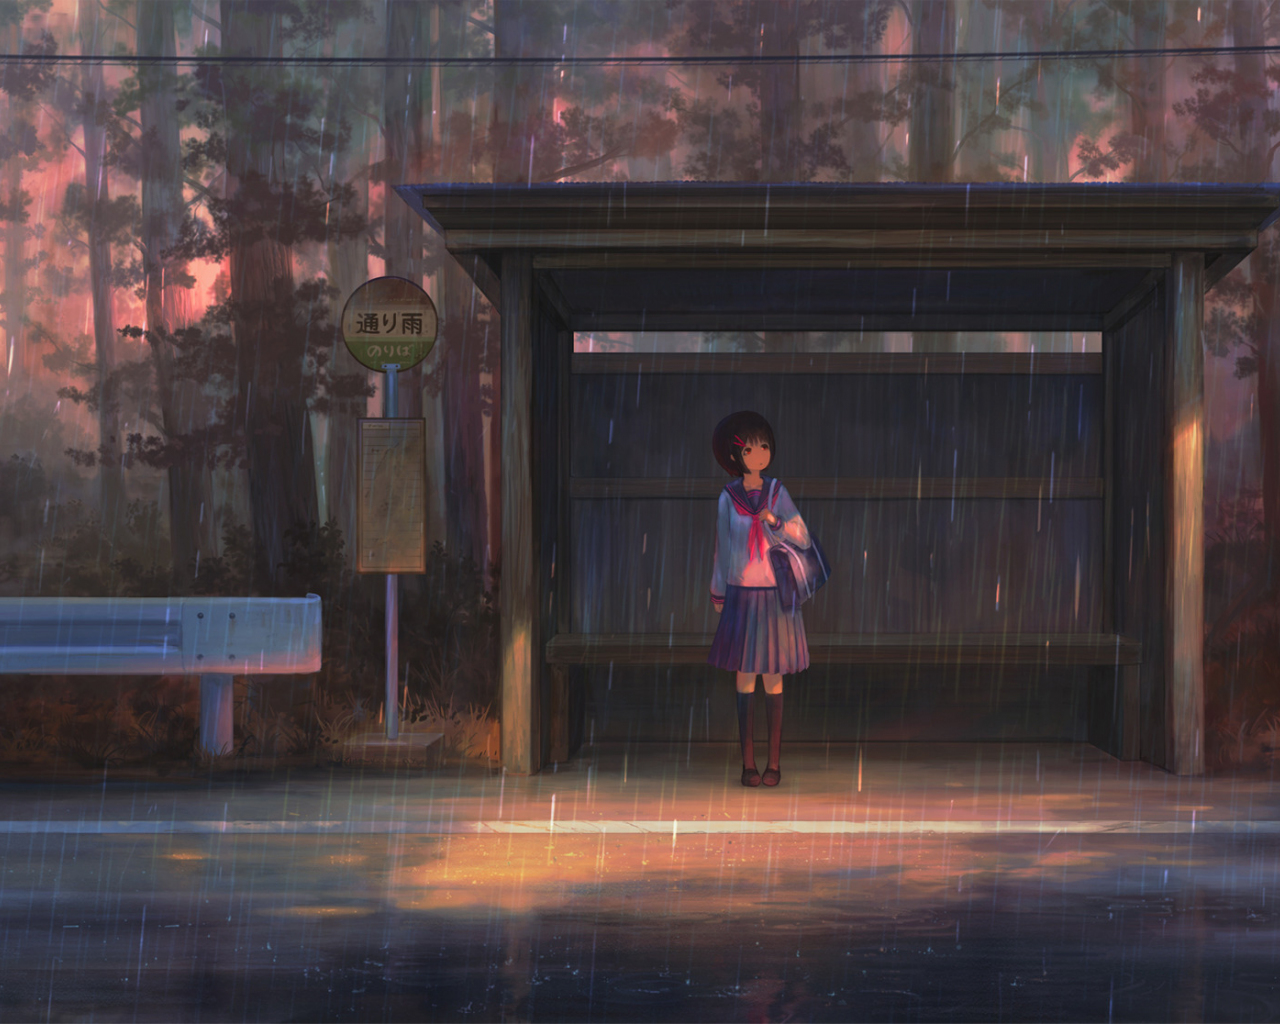 School girl, waiting for bus, rain, outdoor, 1280x1024 wallpaper